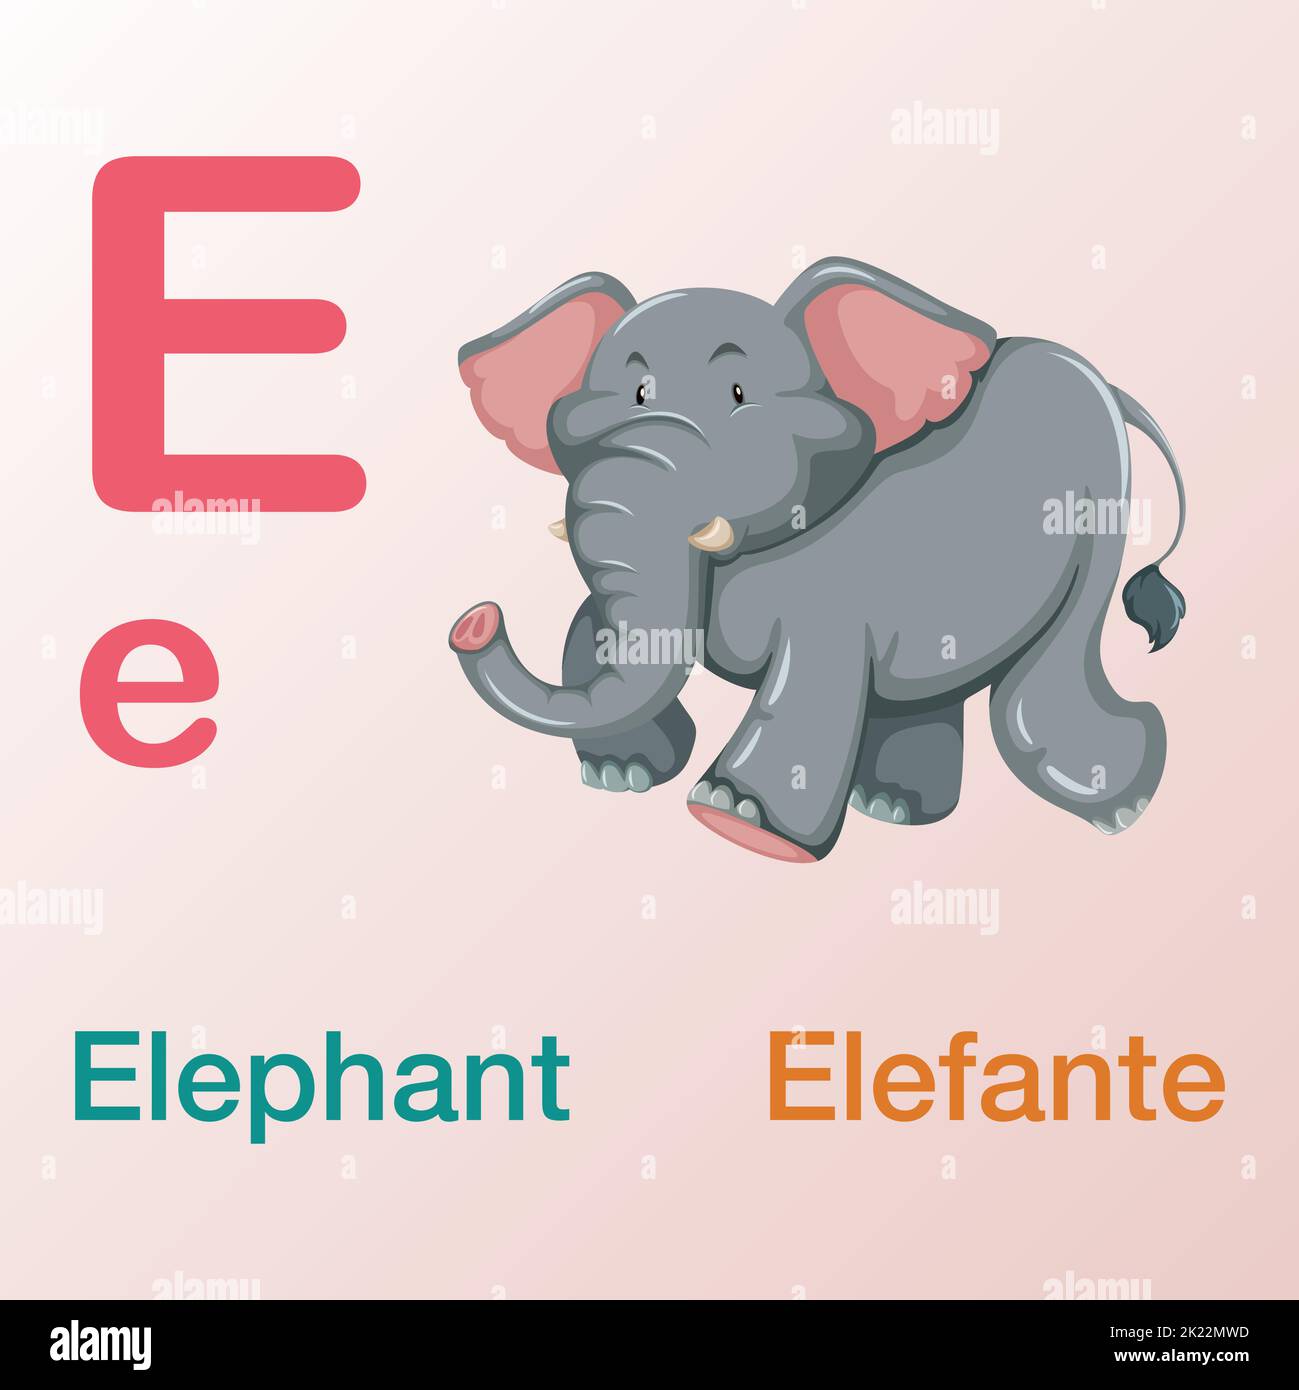 Ein englisch-spanisches Alphabet-Buchdesign für internationale Kinder mit E-Buchstaben-Illustrationen Stock Vektor